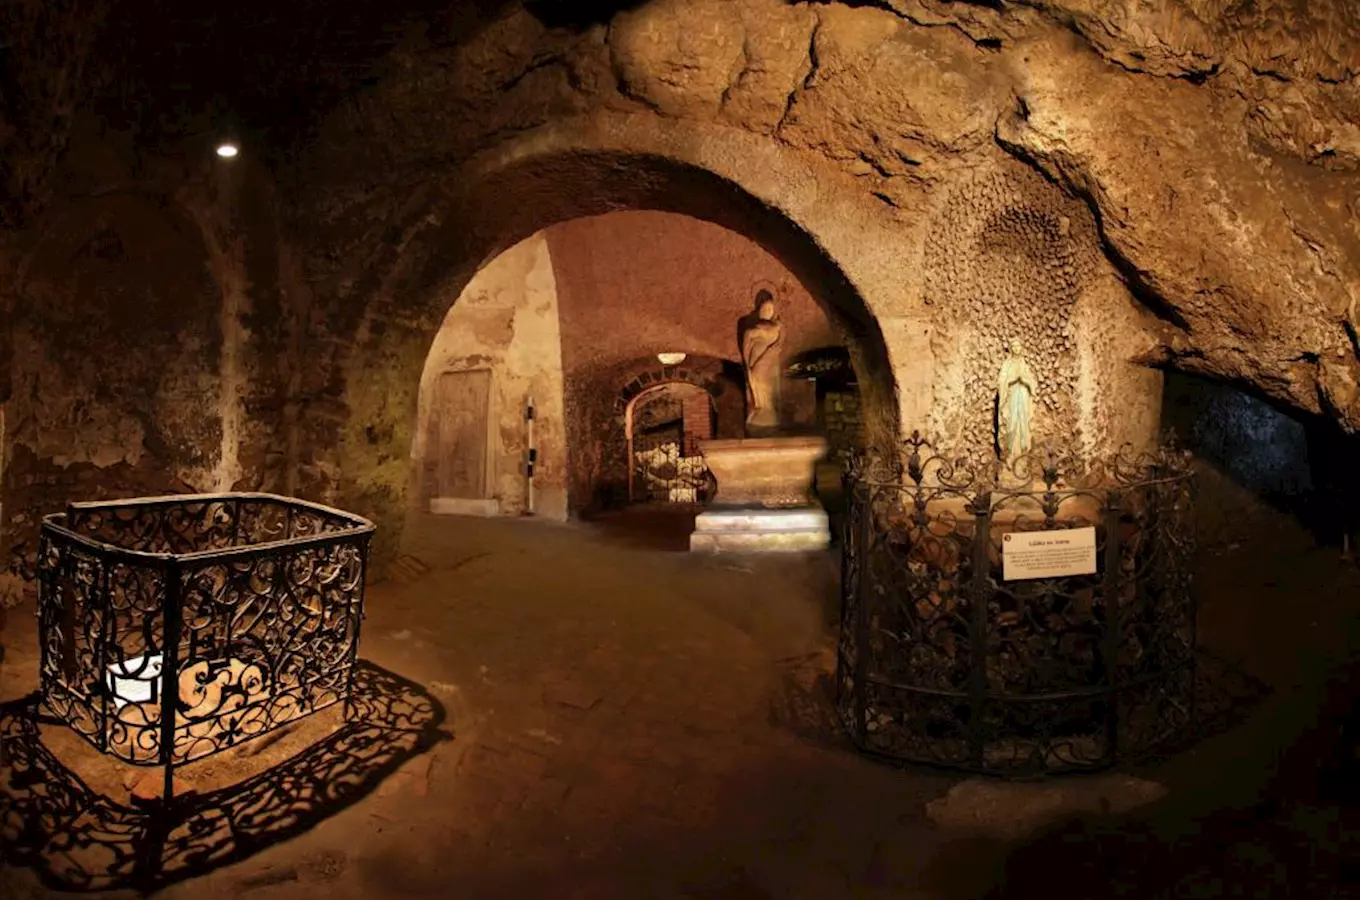 Jeskyně sv. Ivana s pramenem – Svatý Jan pod Skalou